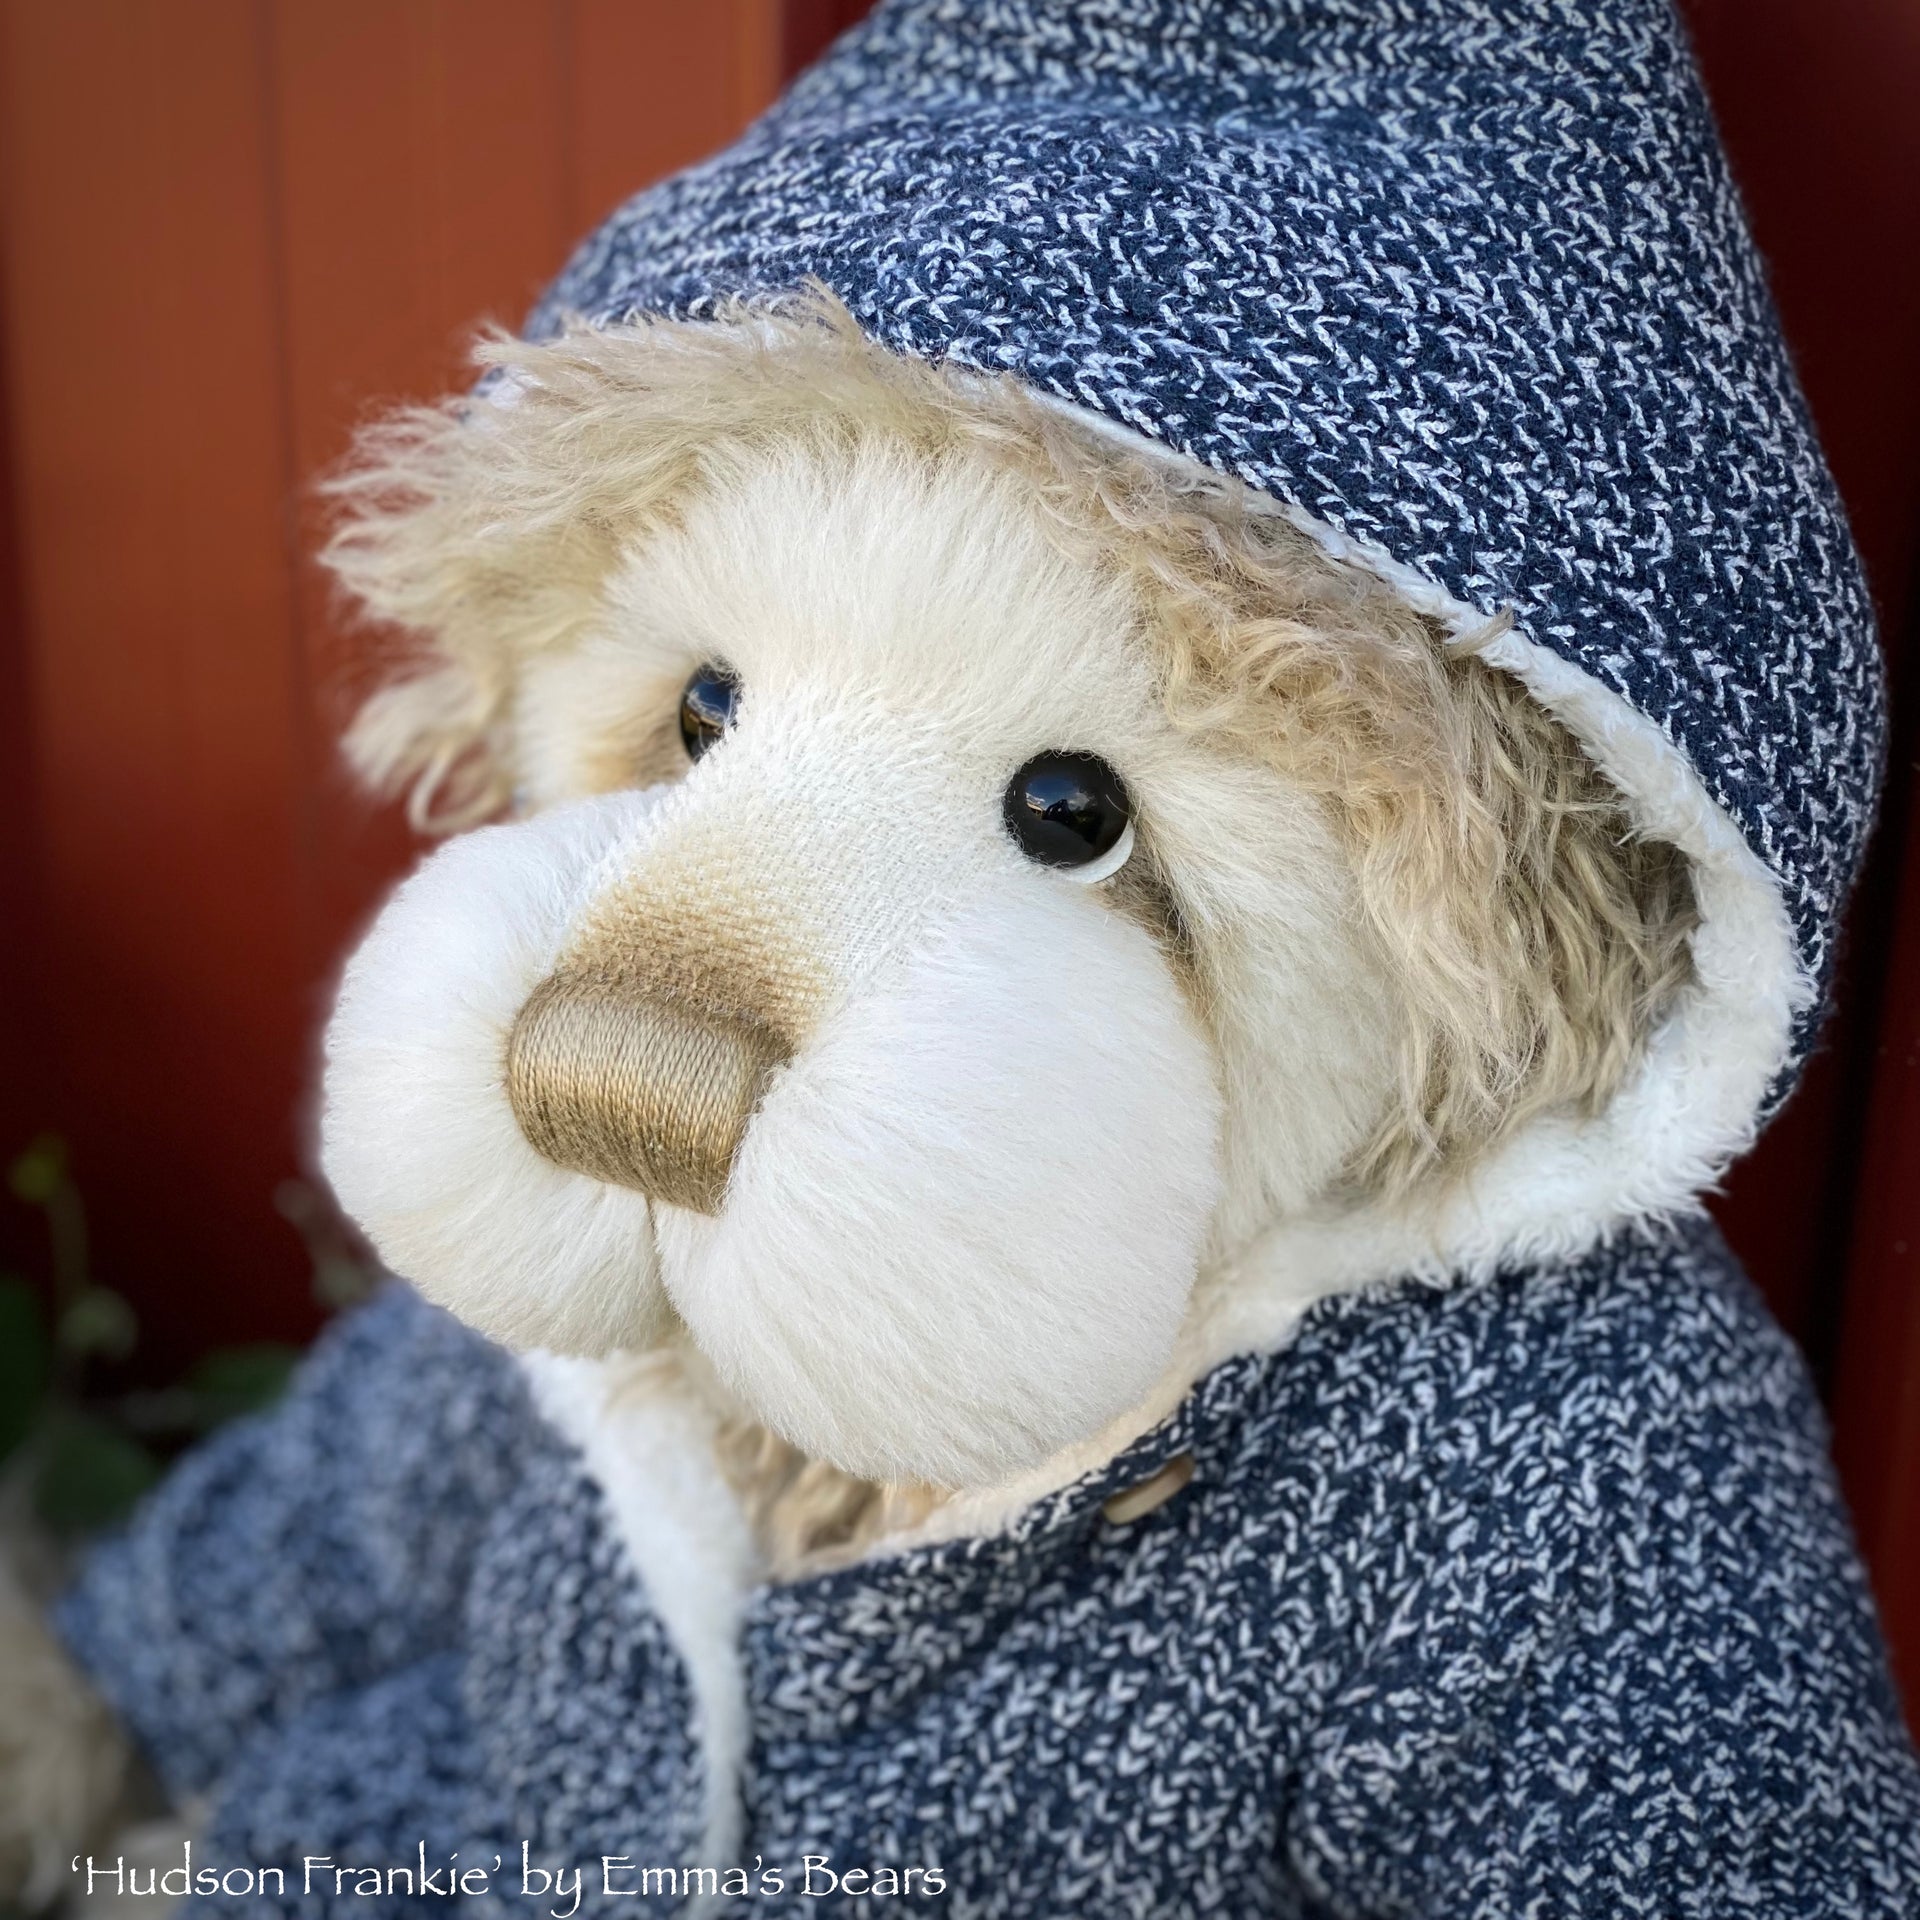 Hudson Frankie - 21" Faux Fur and Alpaca Artist Bear by Emma's Bears - OOAK